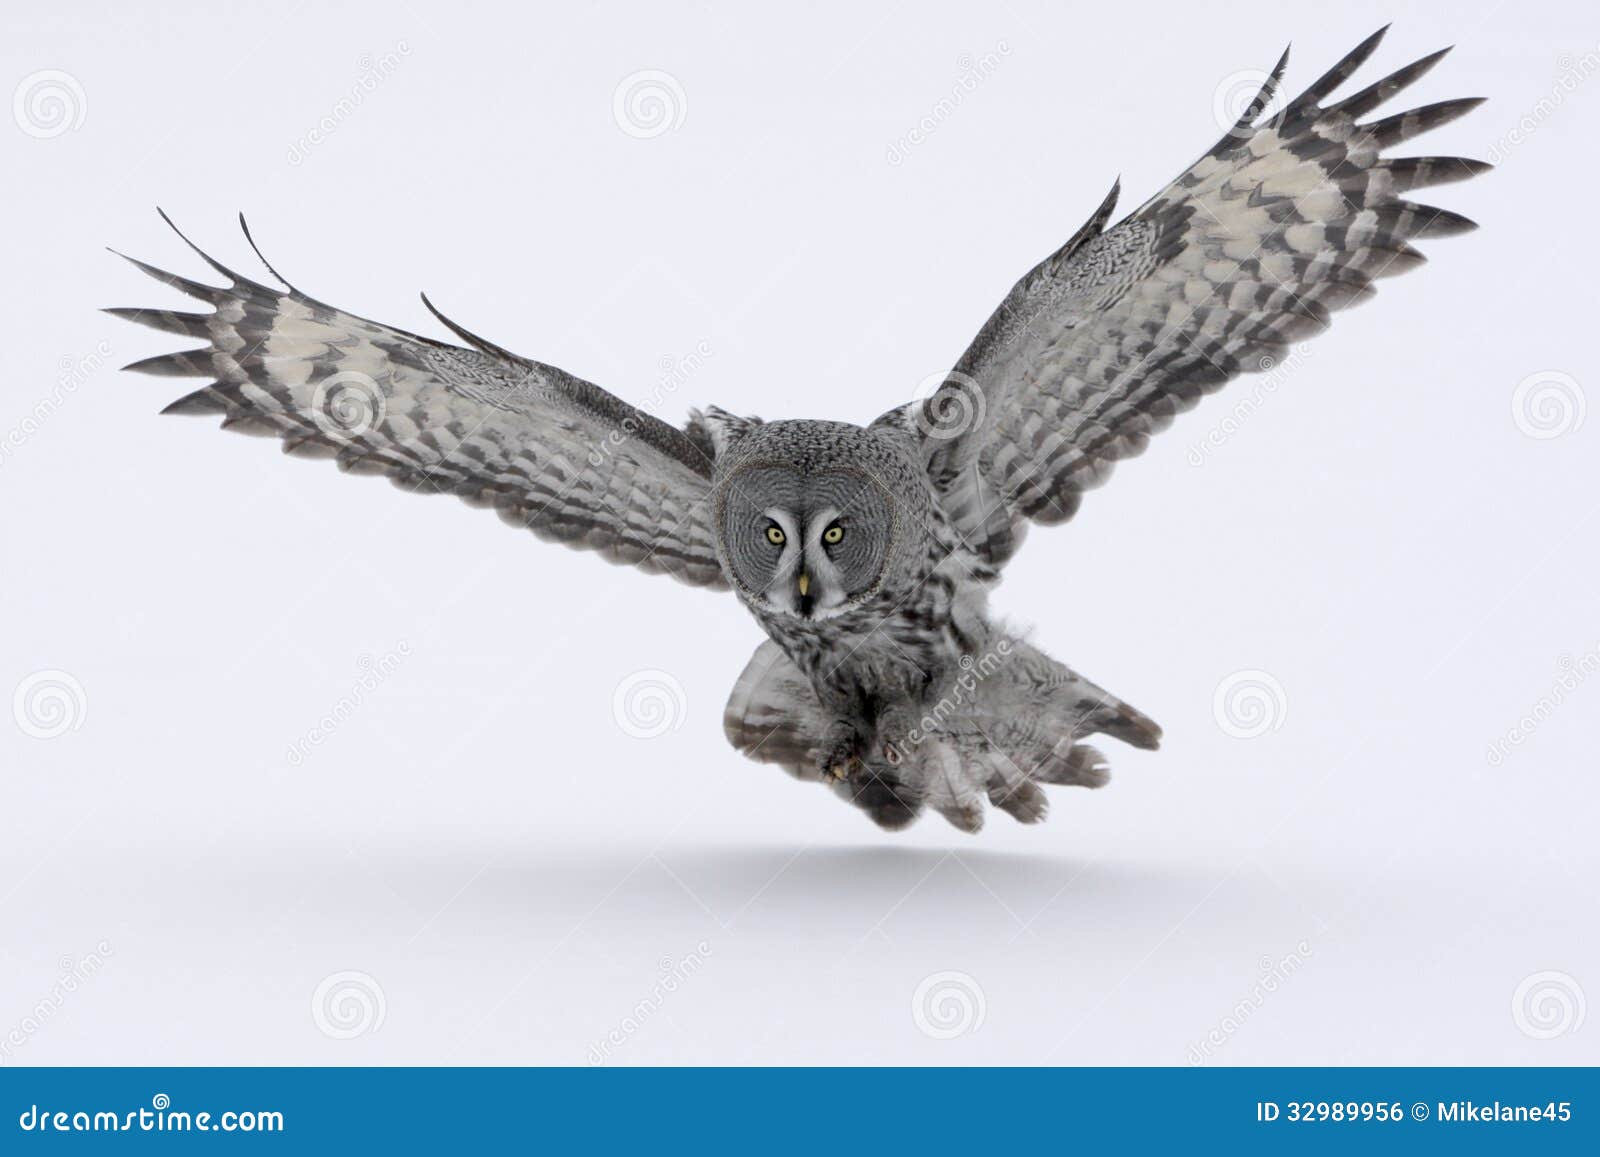 great-grey owl, strix nebulosa